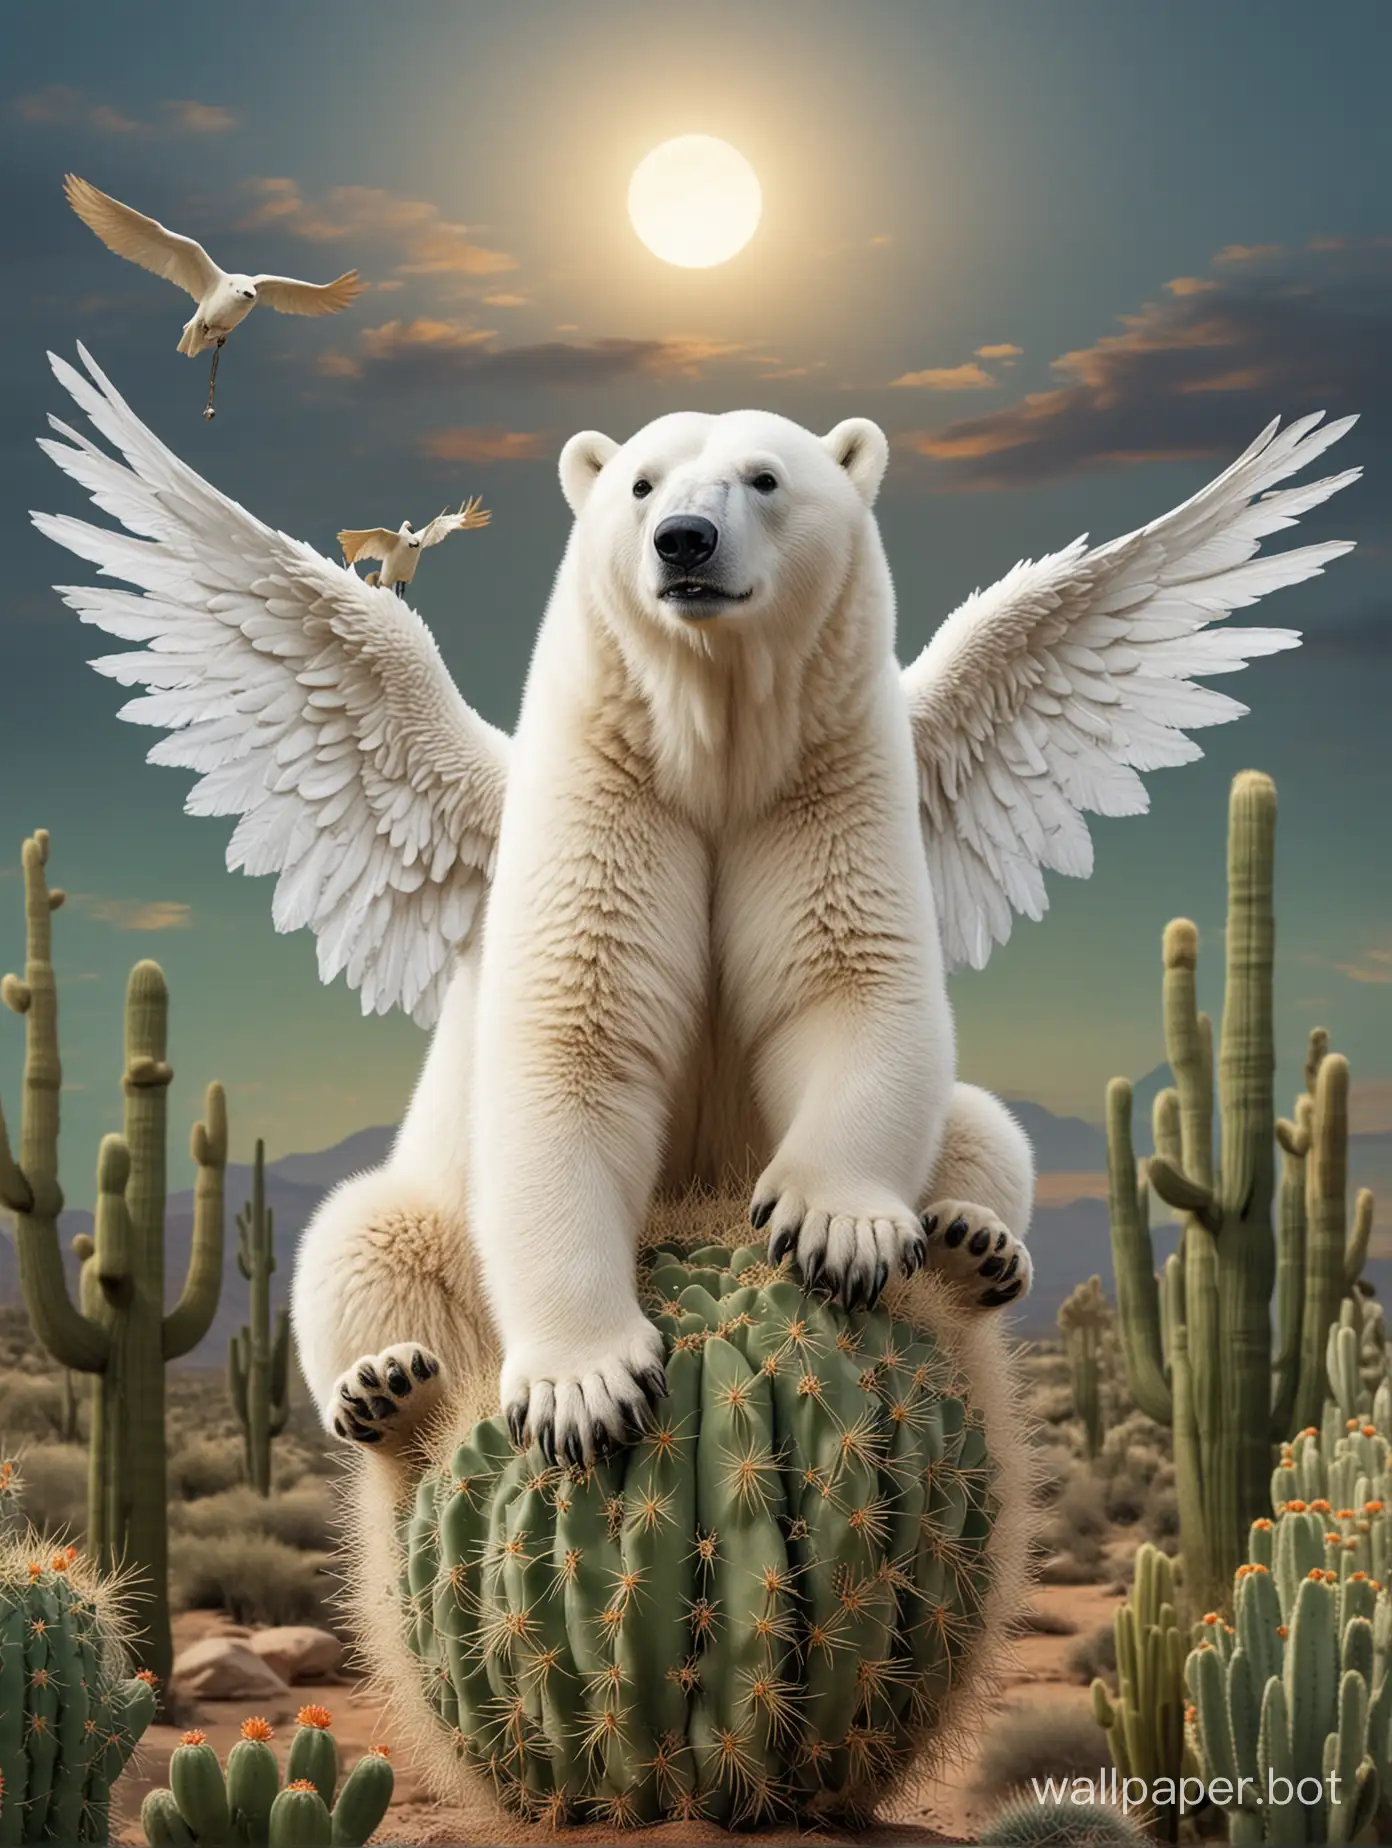 полярный медведь на кактусе с крыльями



